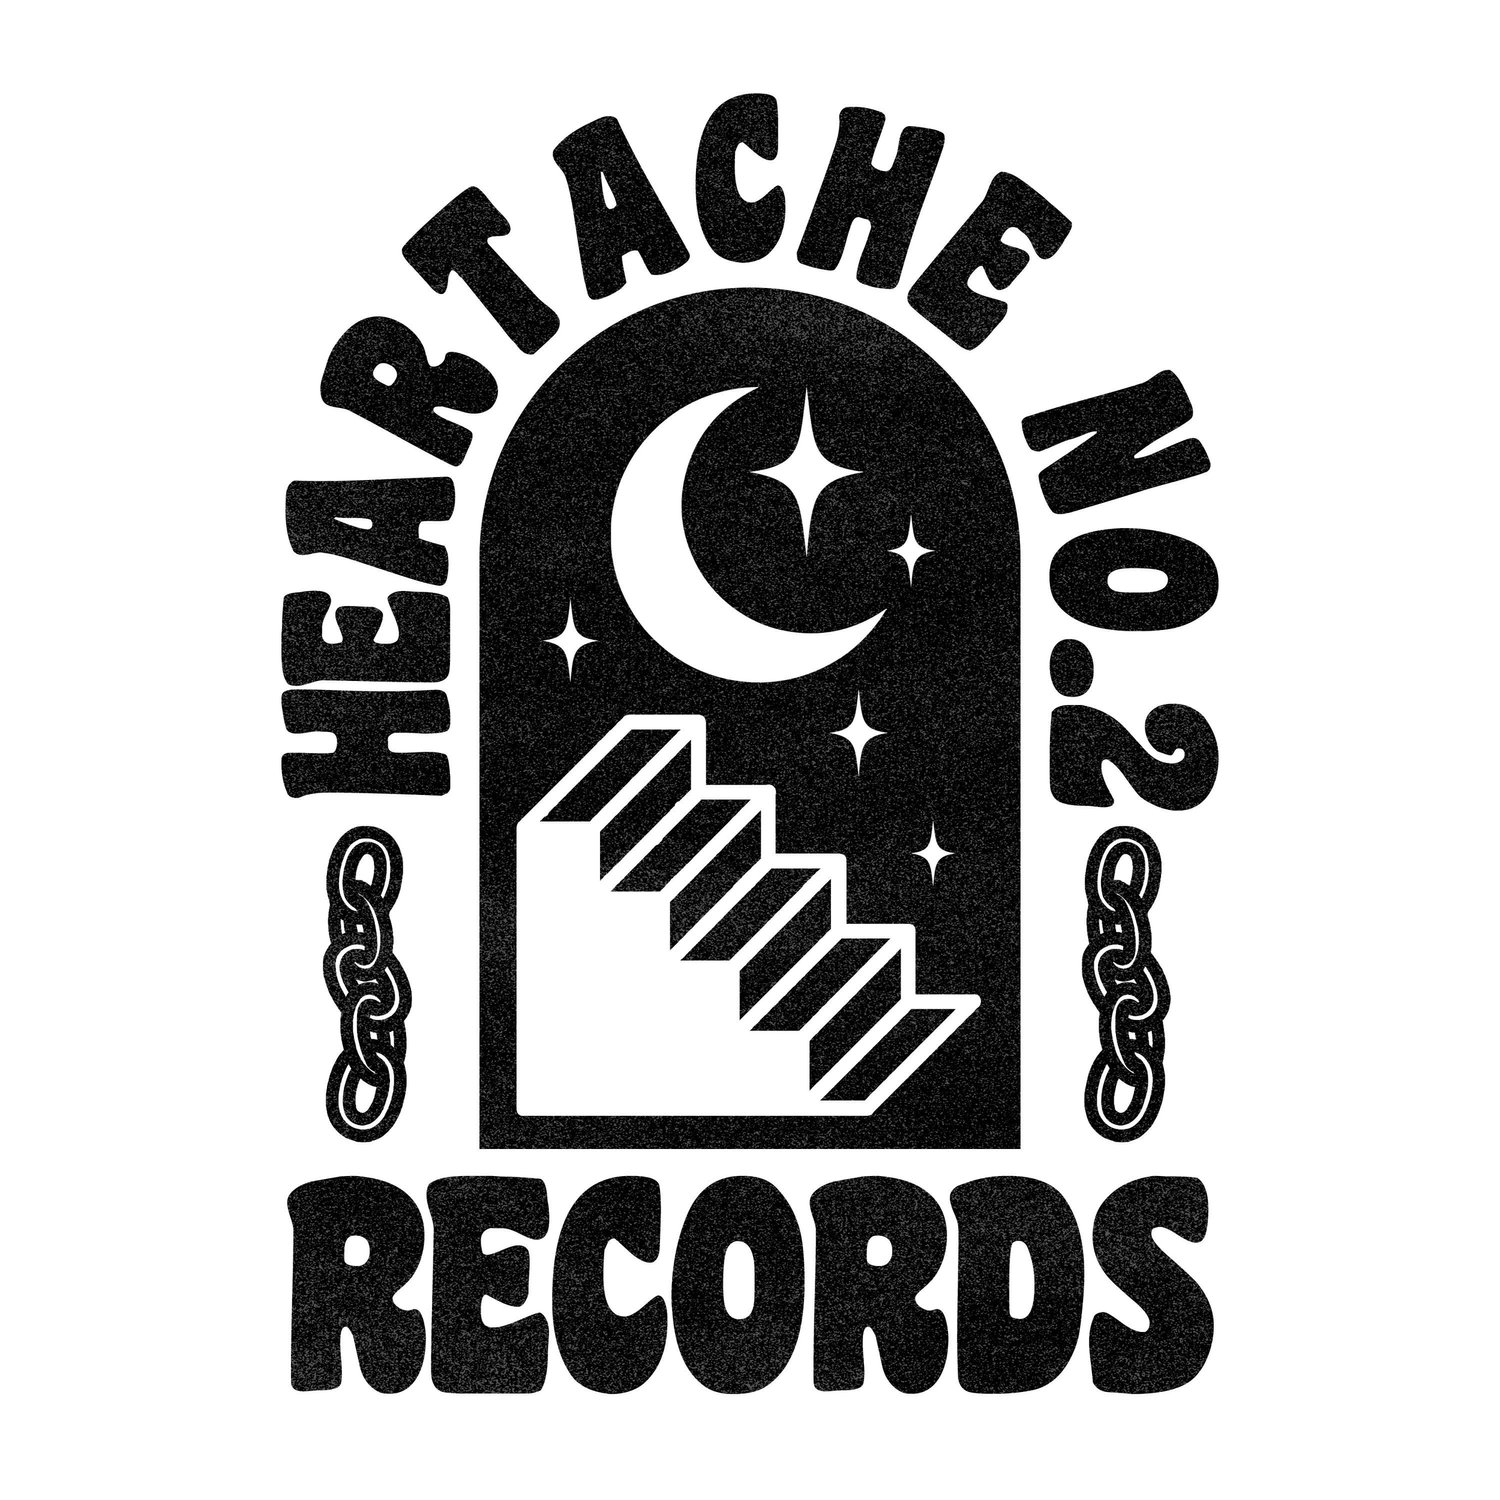 Heartache No. 2 Records